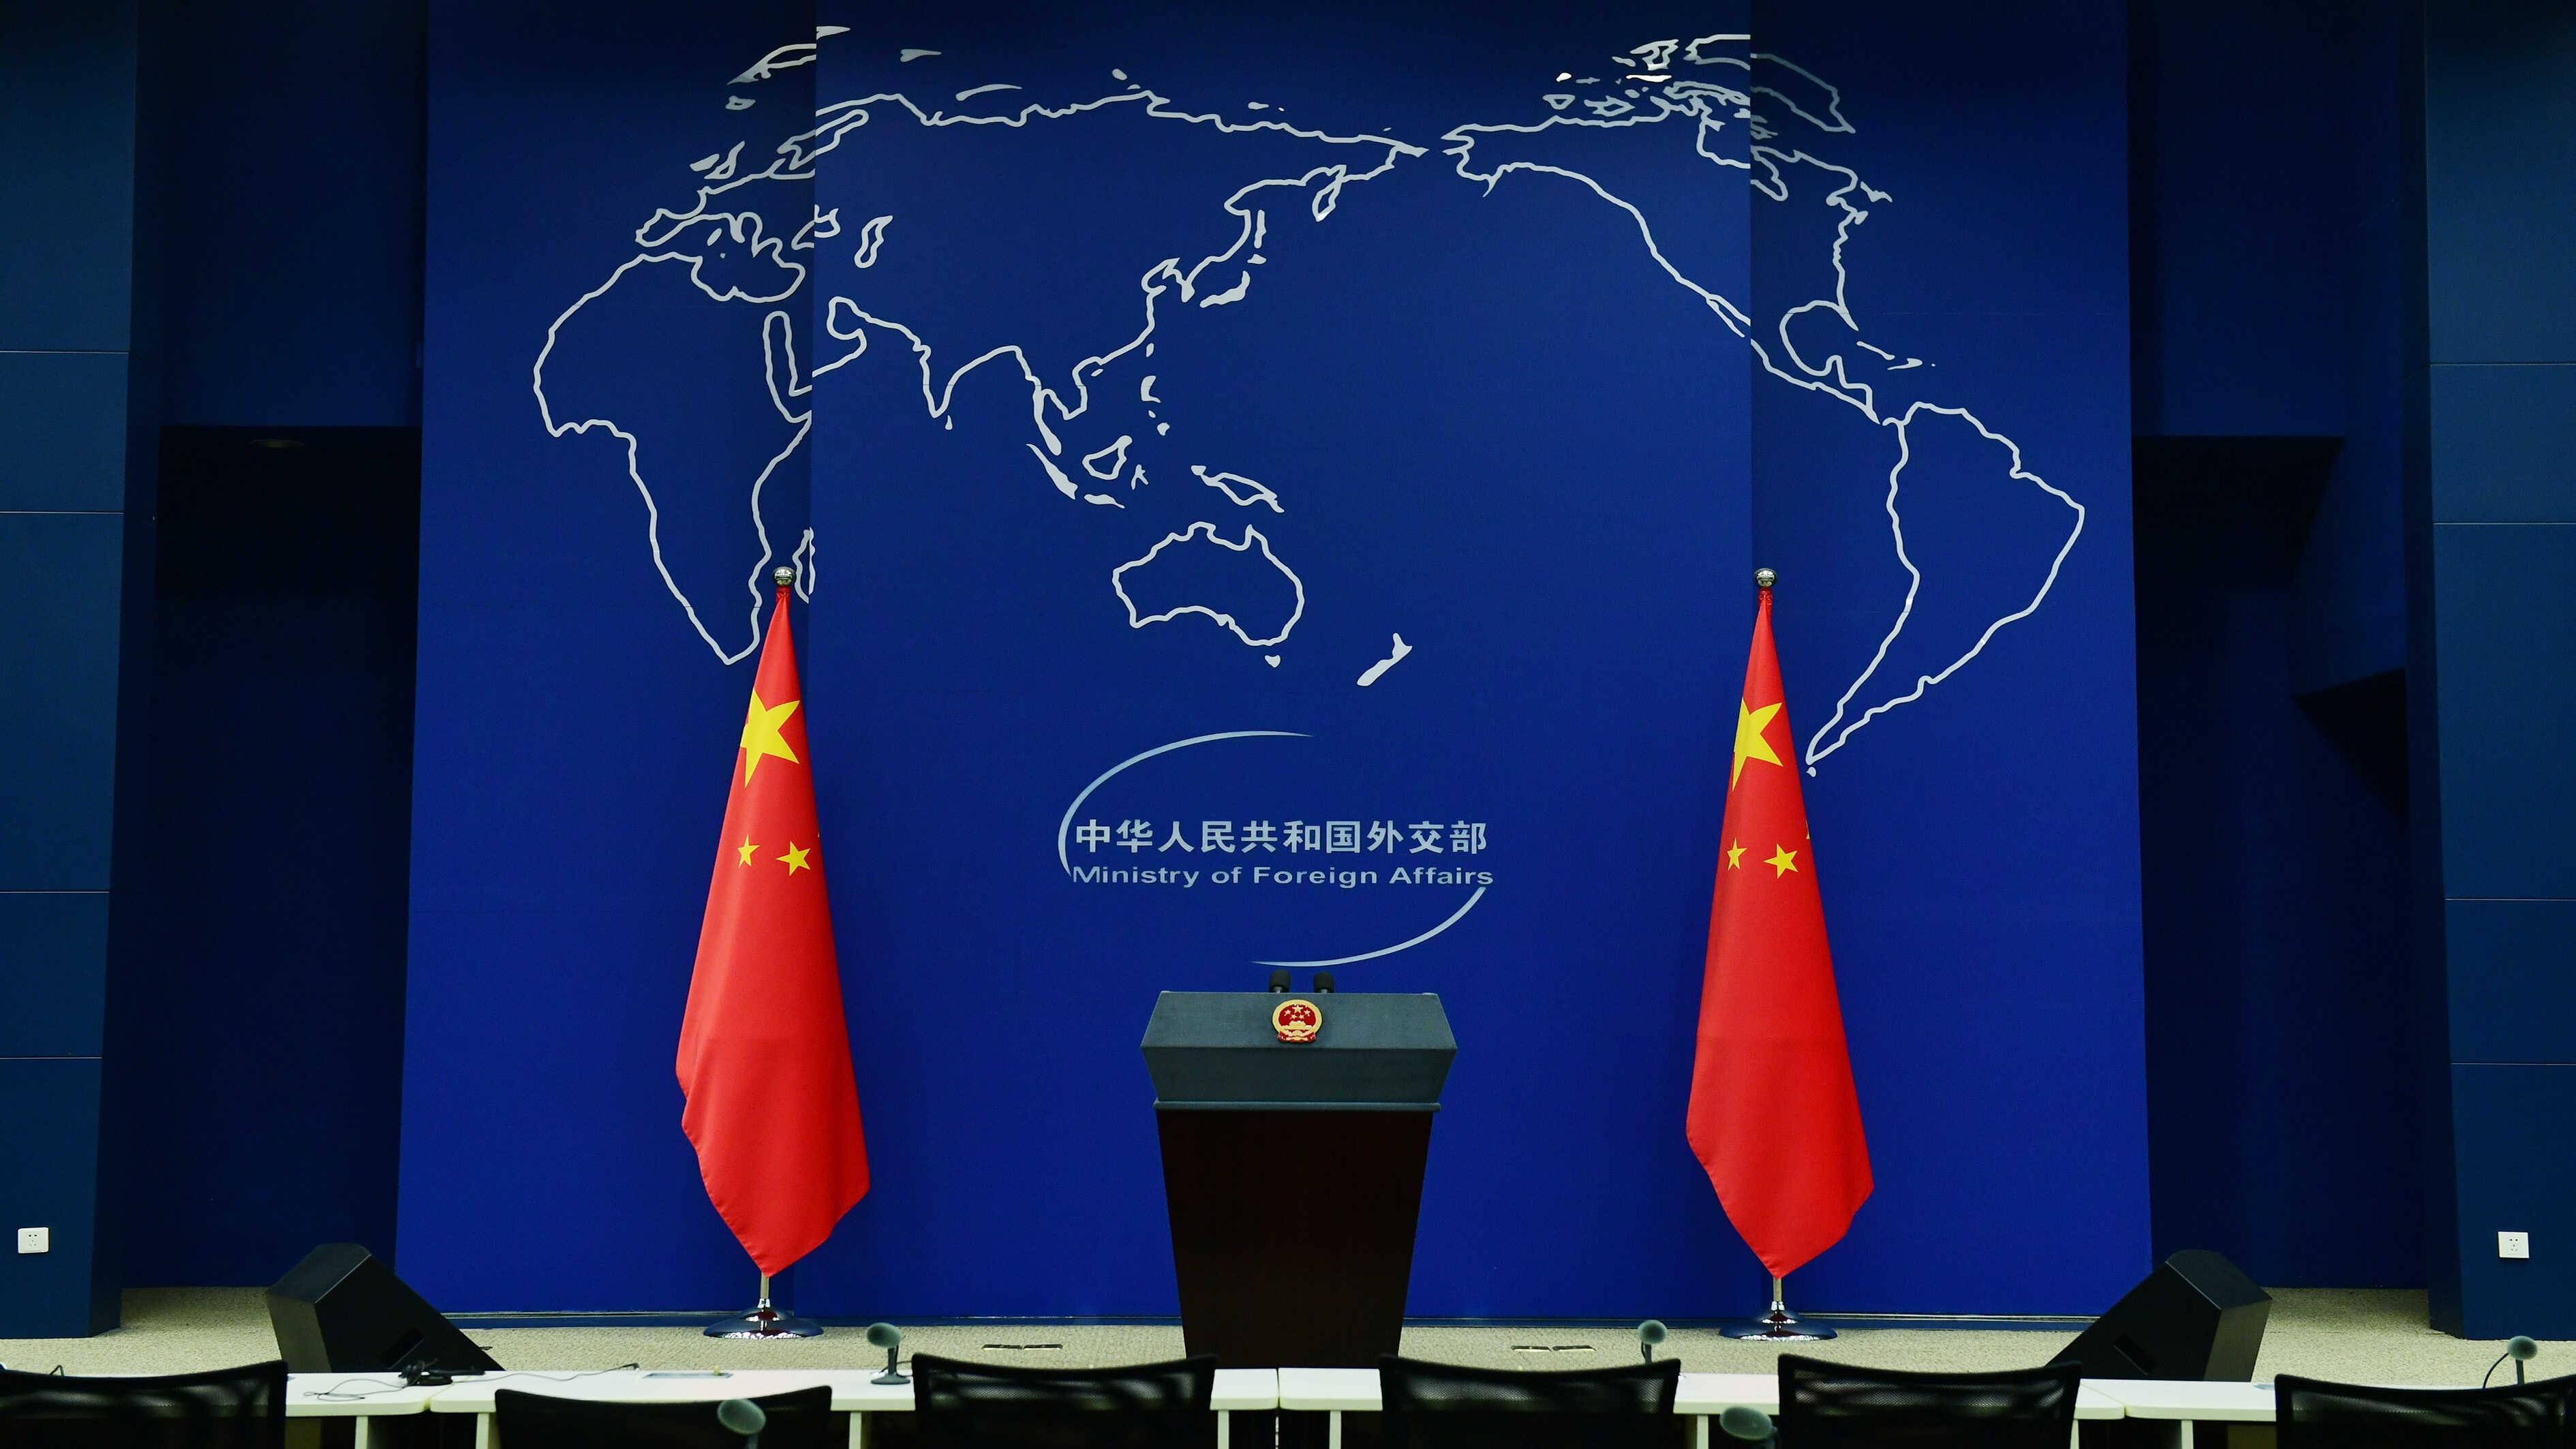 حضور وزیر خارجه چین در شصتمین کنفرانس امنیتی مونیخ و بازدید از اسپانیا و فرانسها